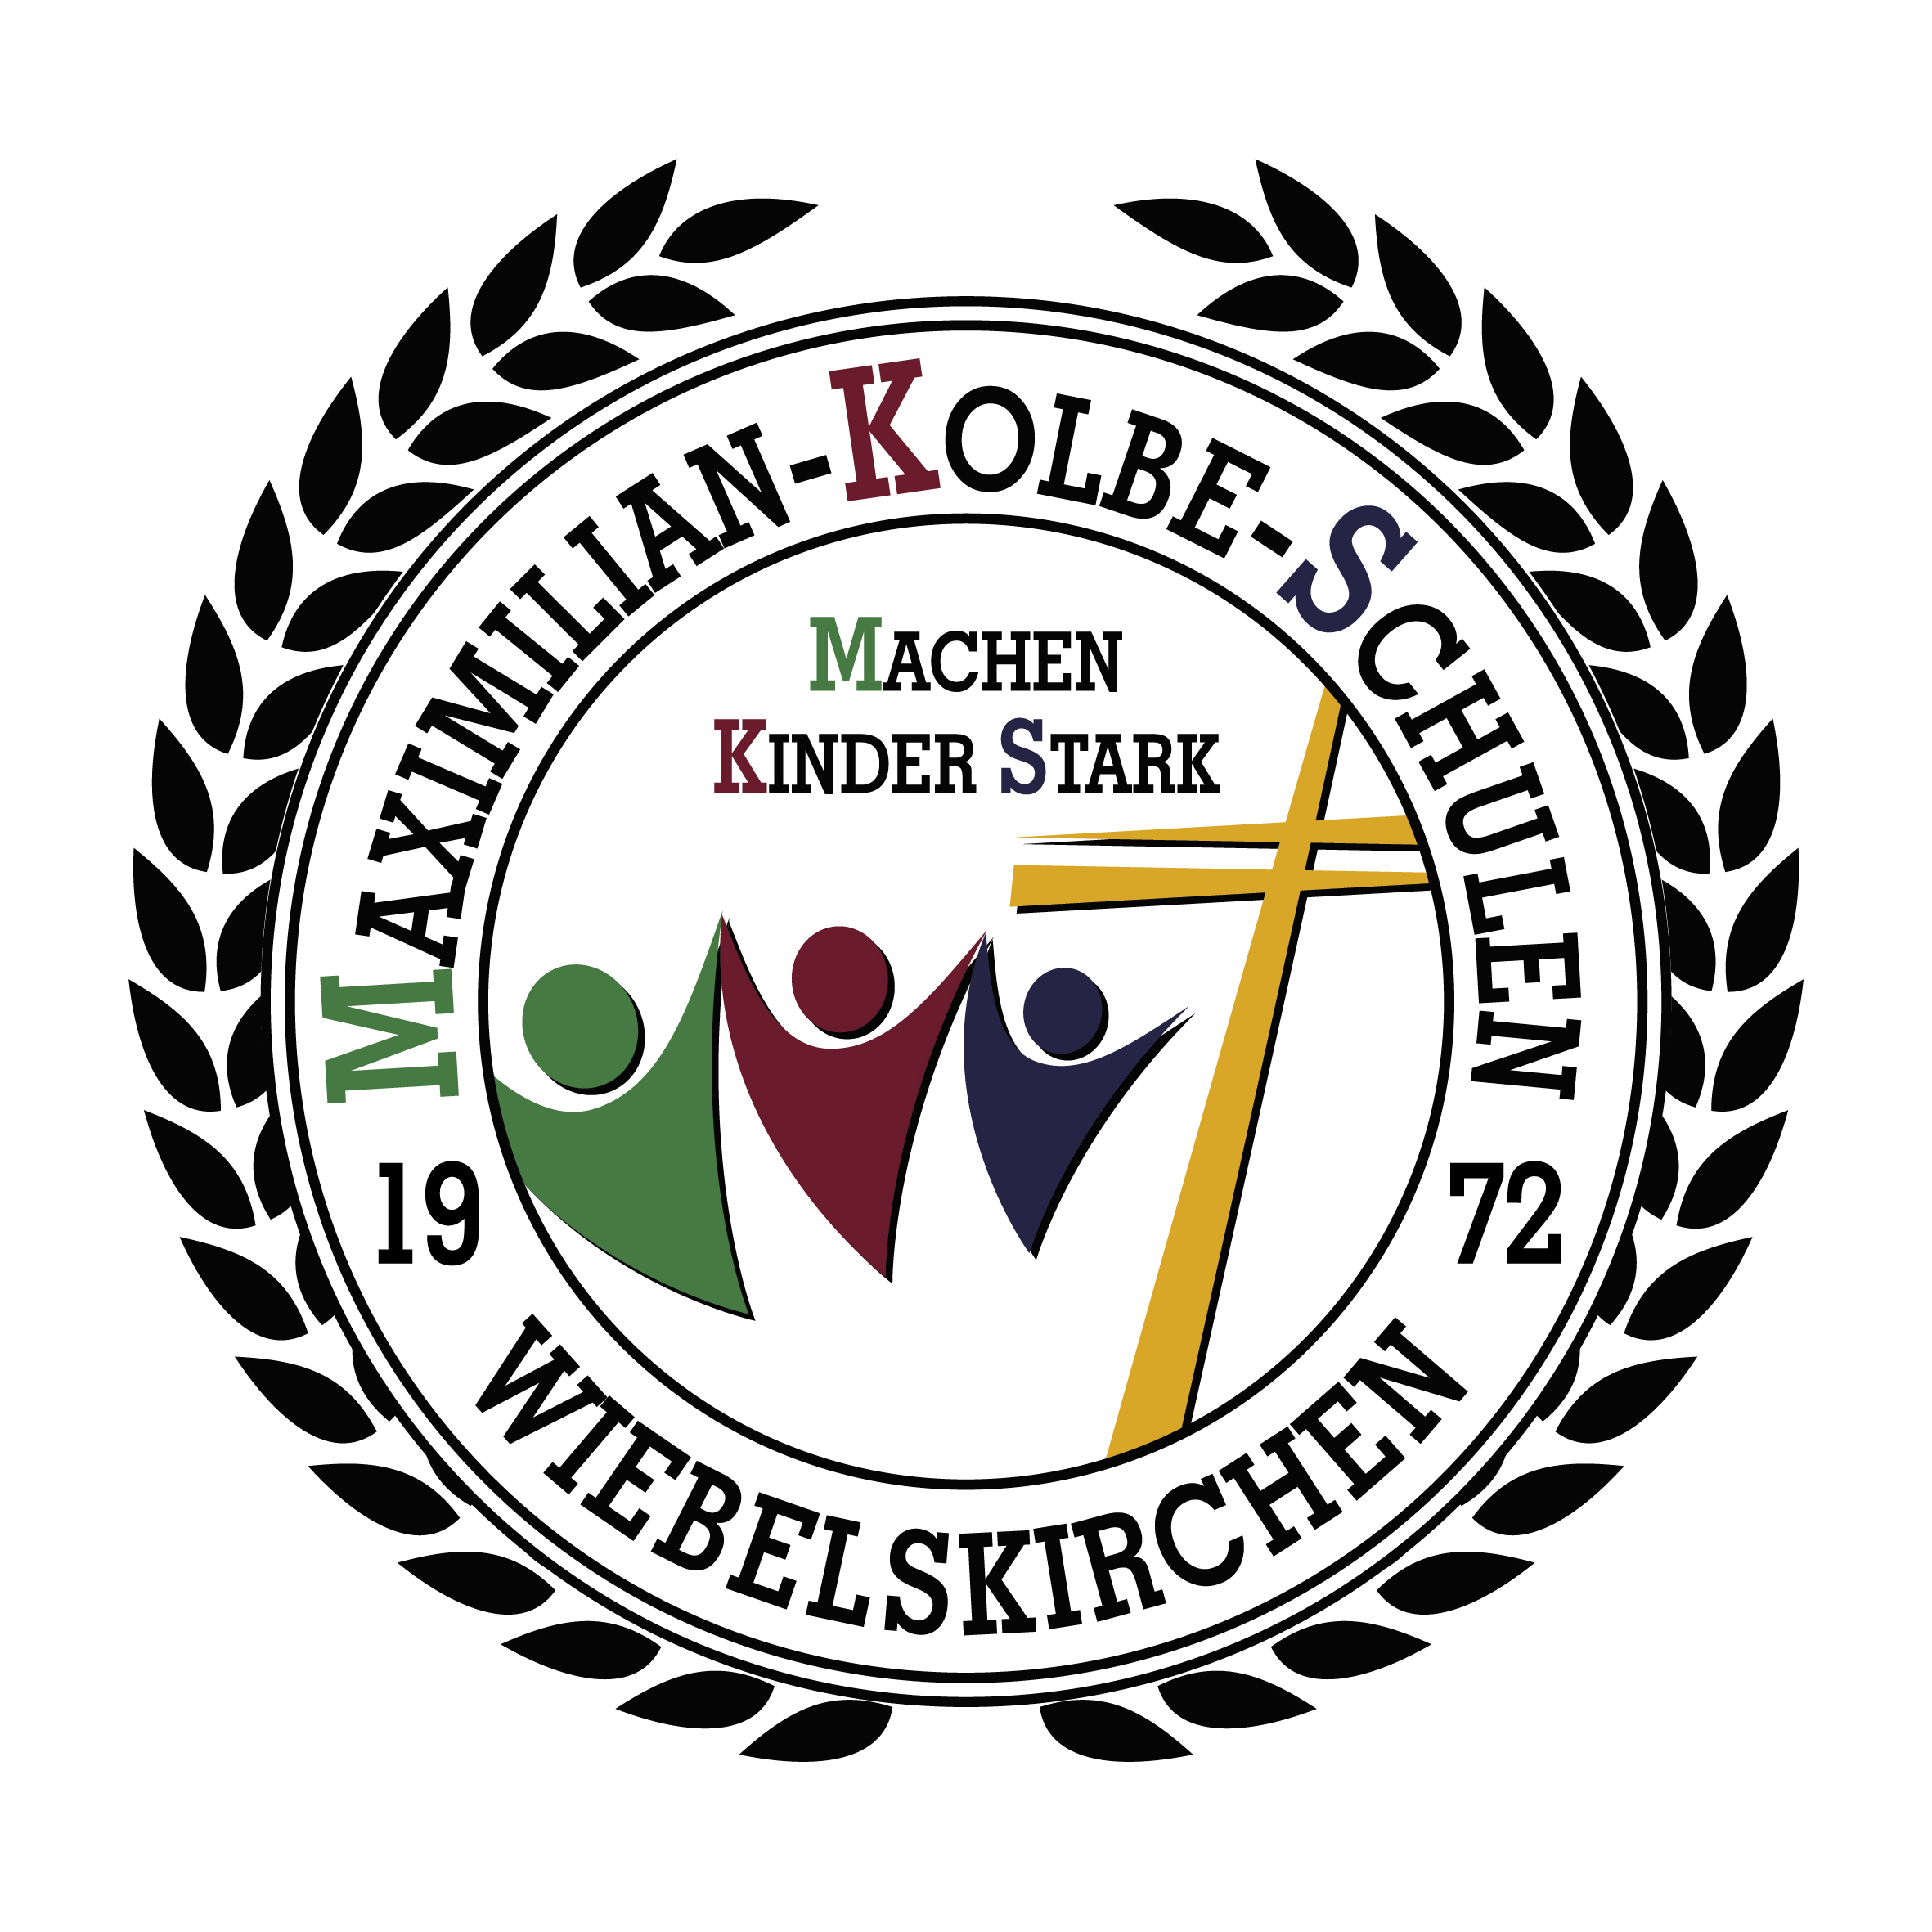 Maximilian-Kolbe-Schule